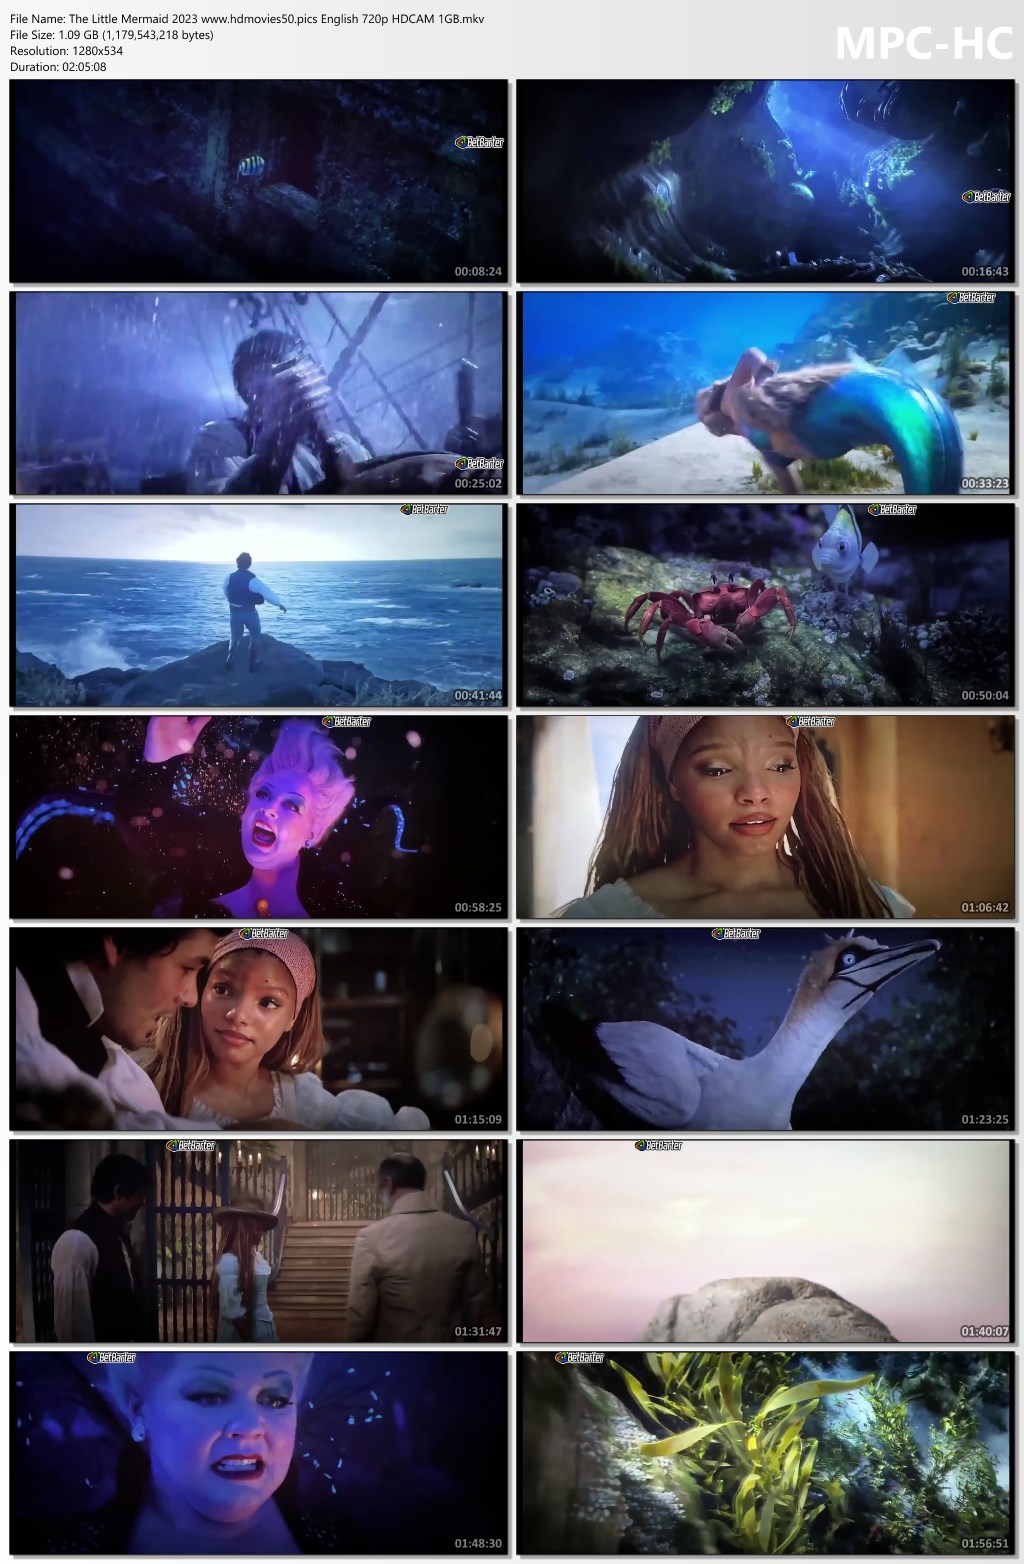 The Little Mermaid 2023 screenshot HDMoviesFair